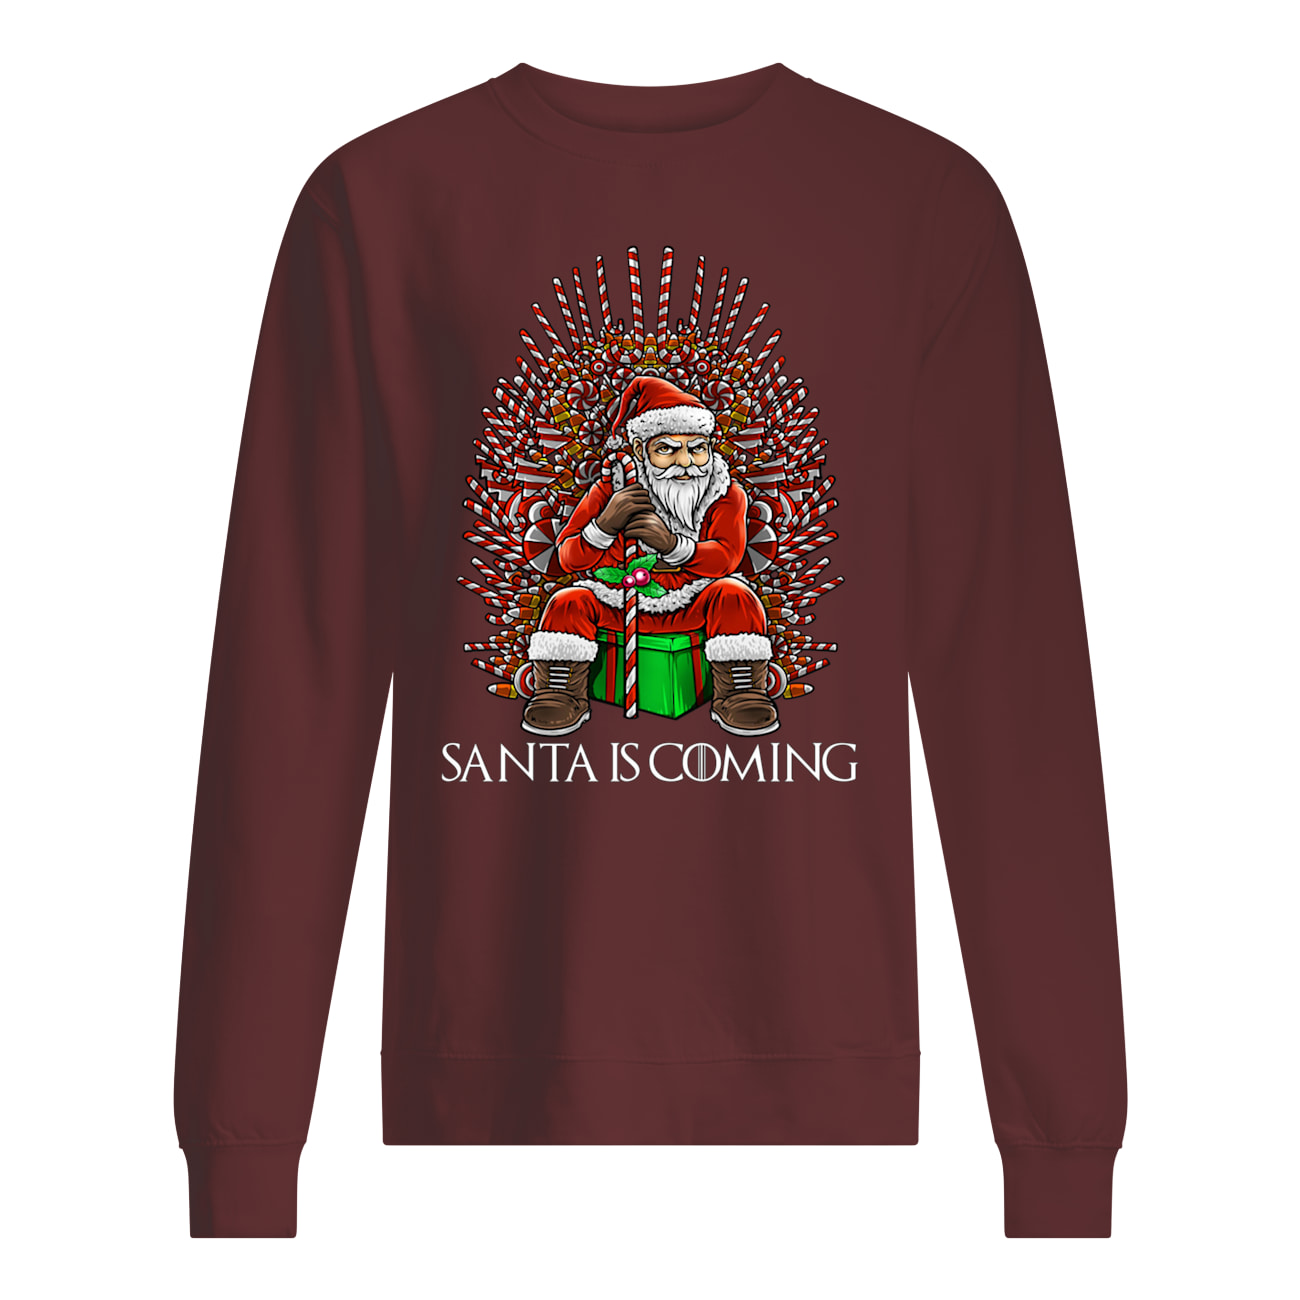 Santa is coming chirstmas sweatshirt